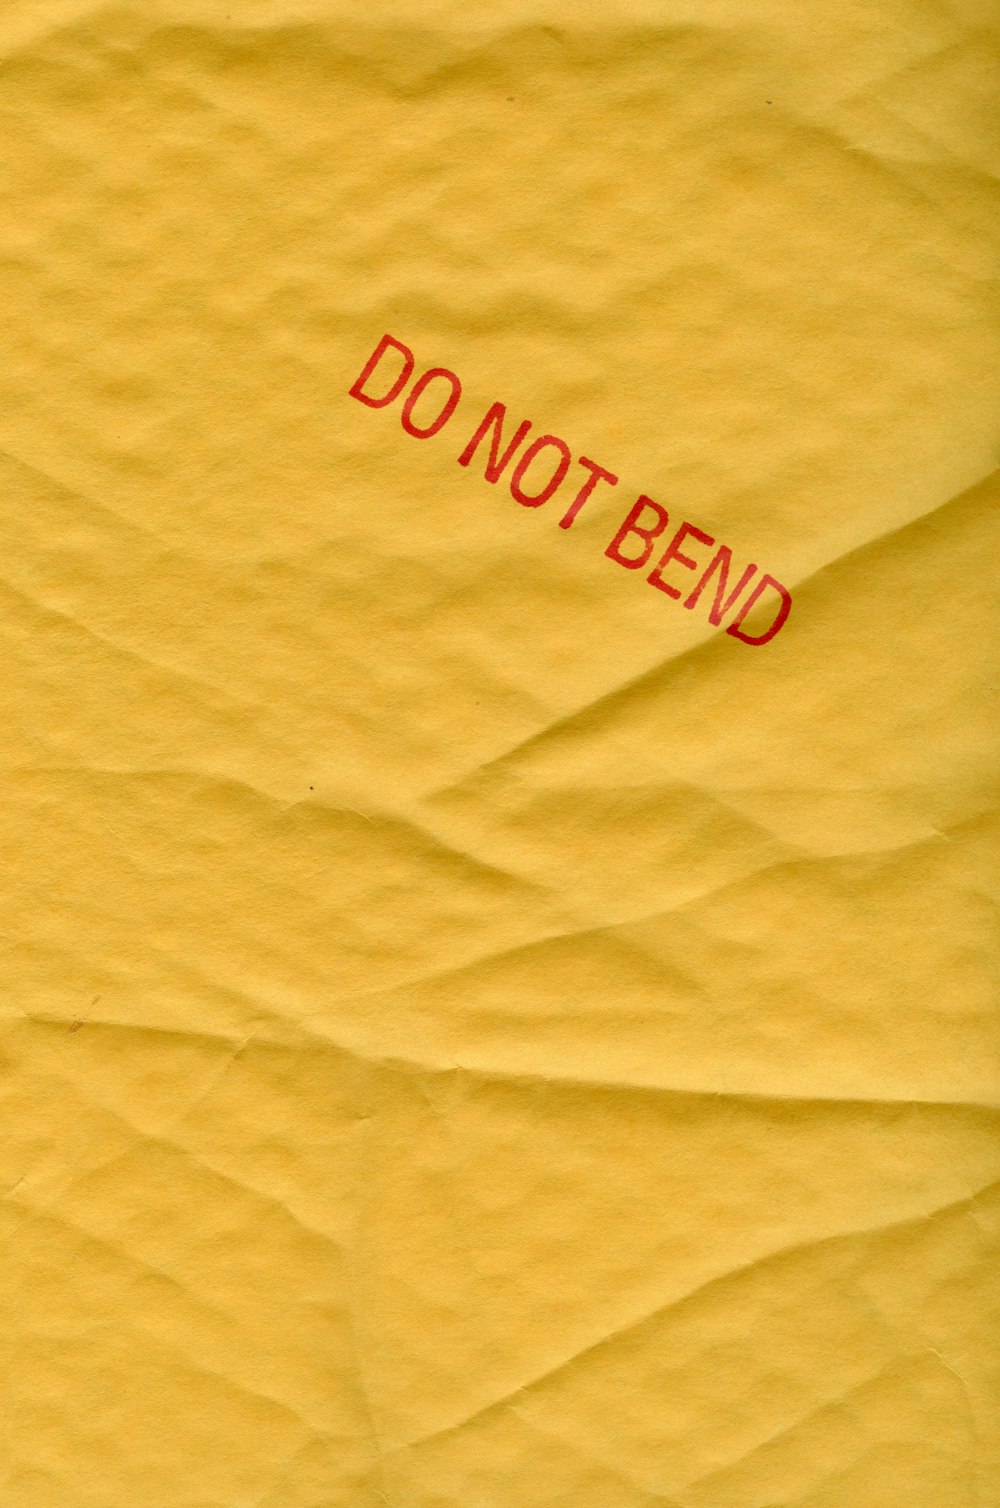 赤いベッドのステッカーが貼られた黄色い紙